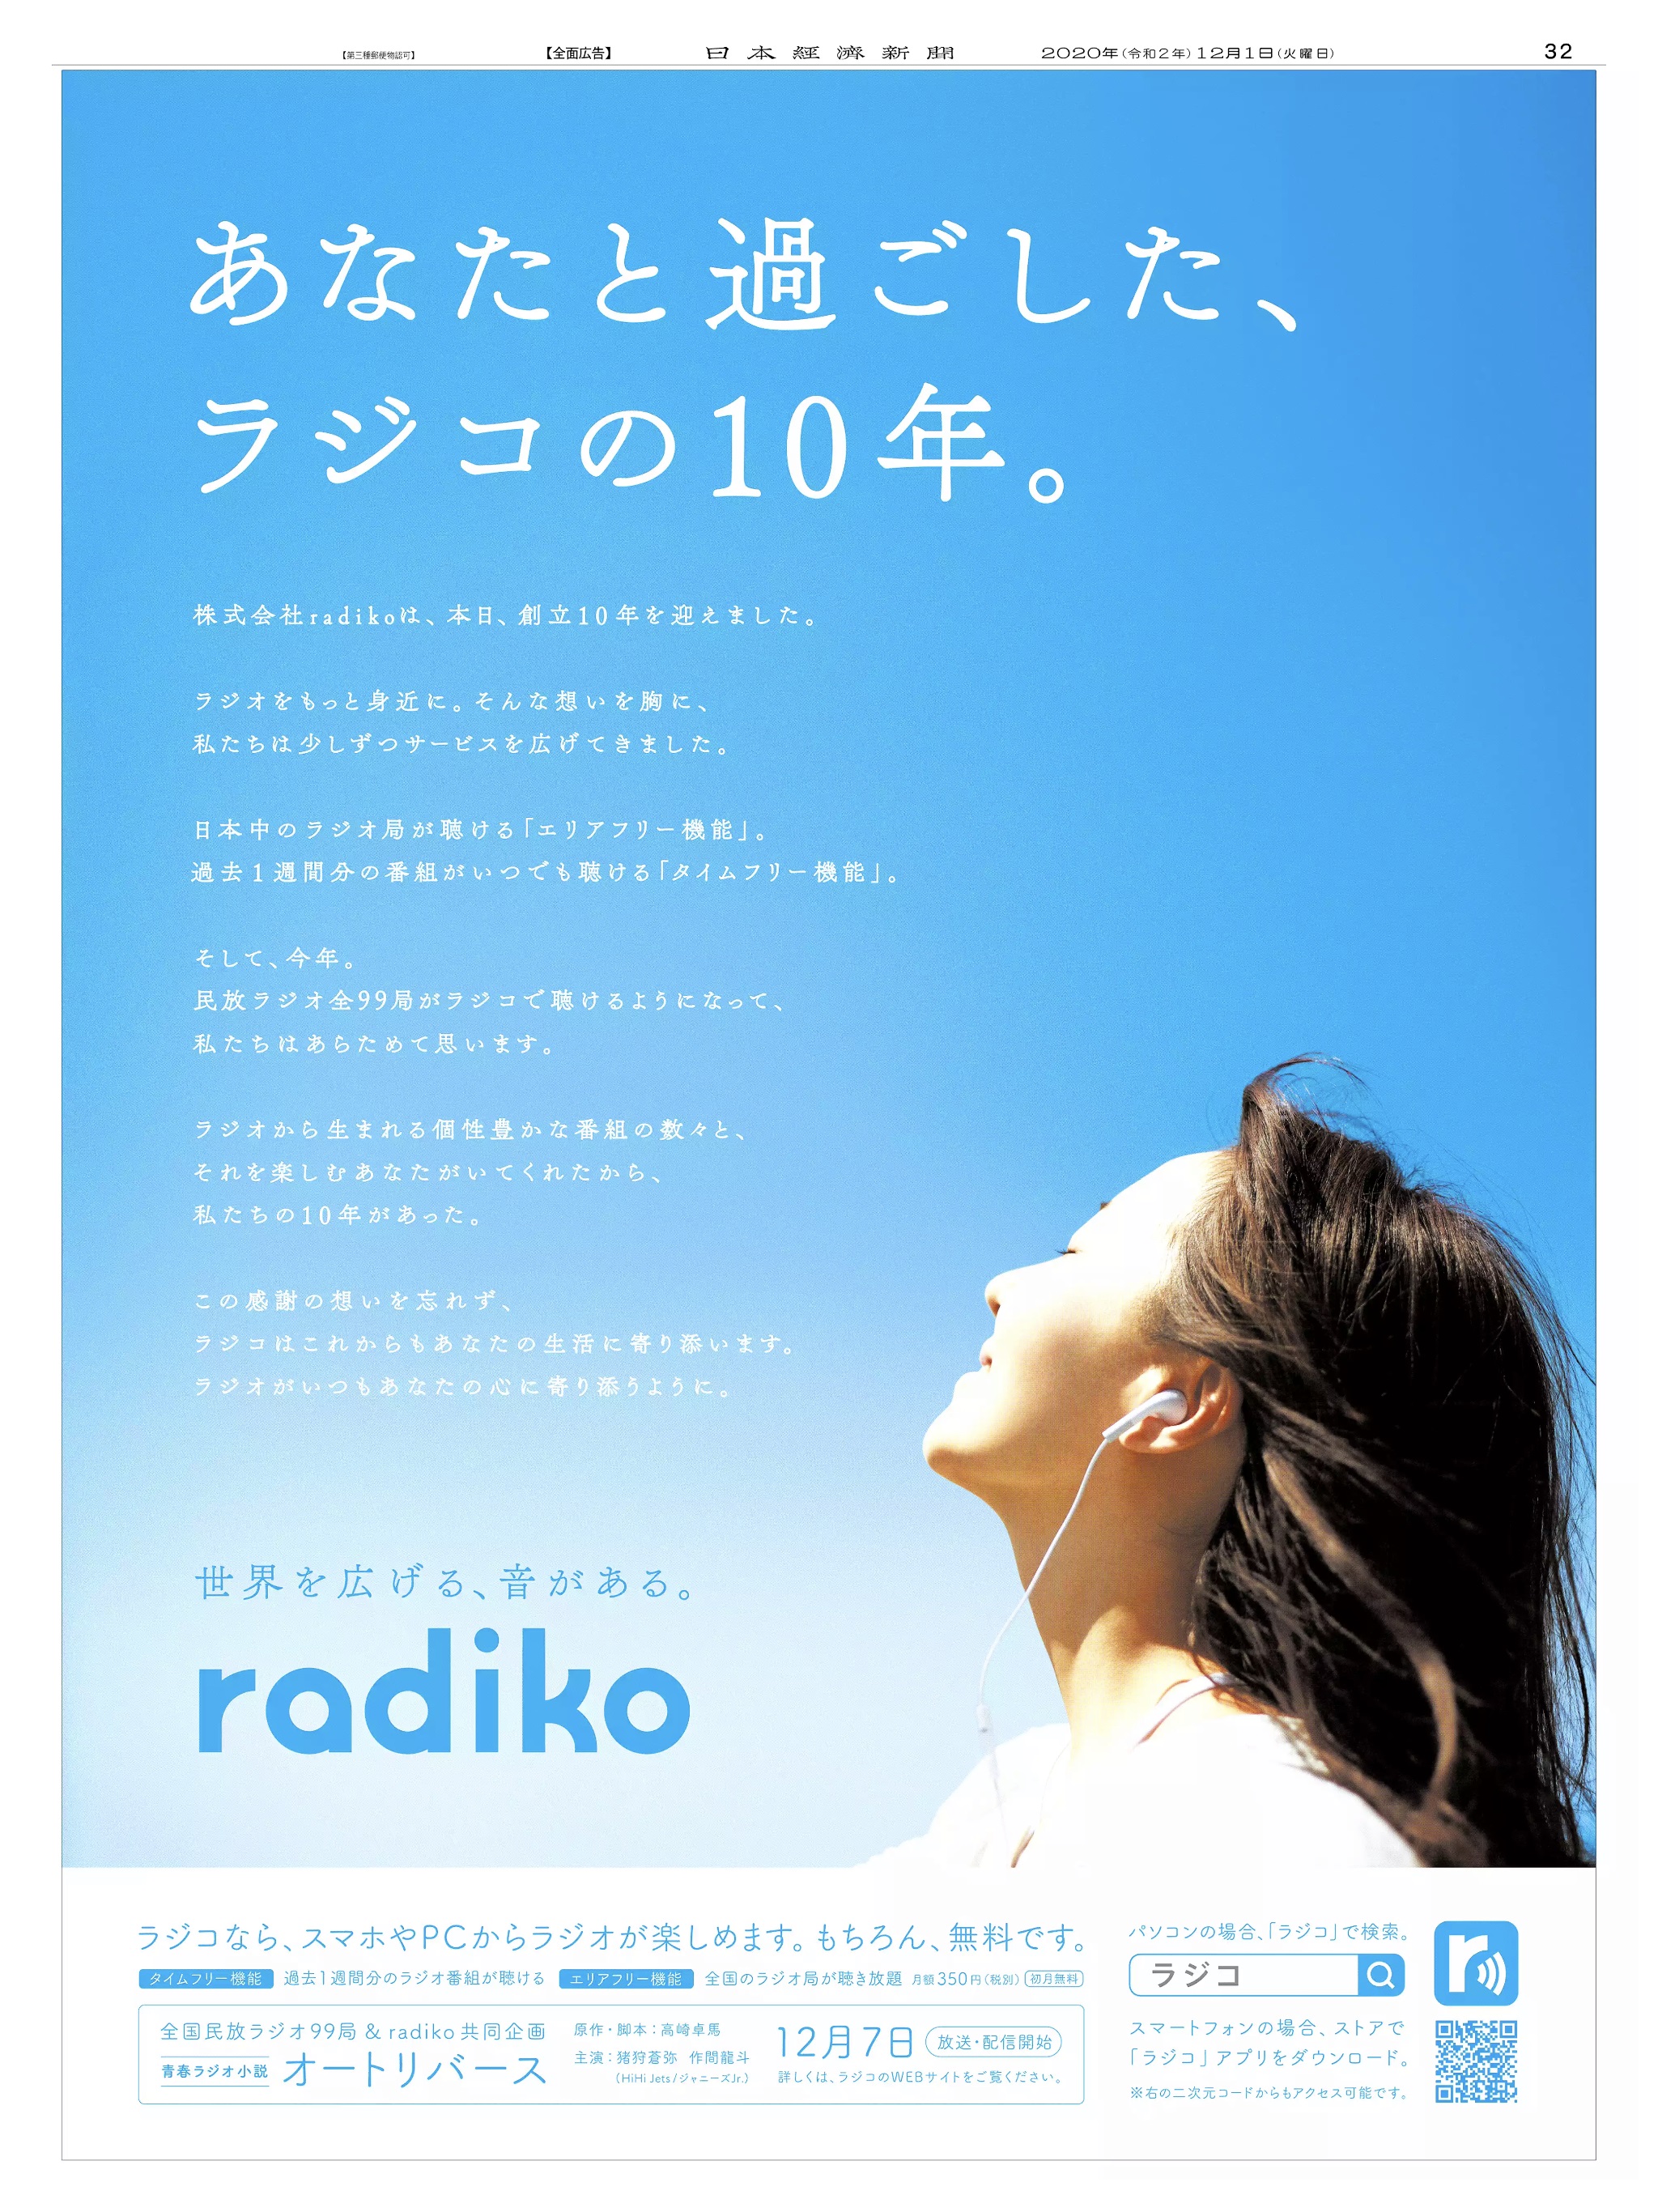 周年記念広告事例 「radiko 創立10周年」